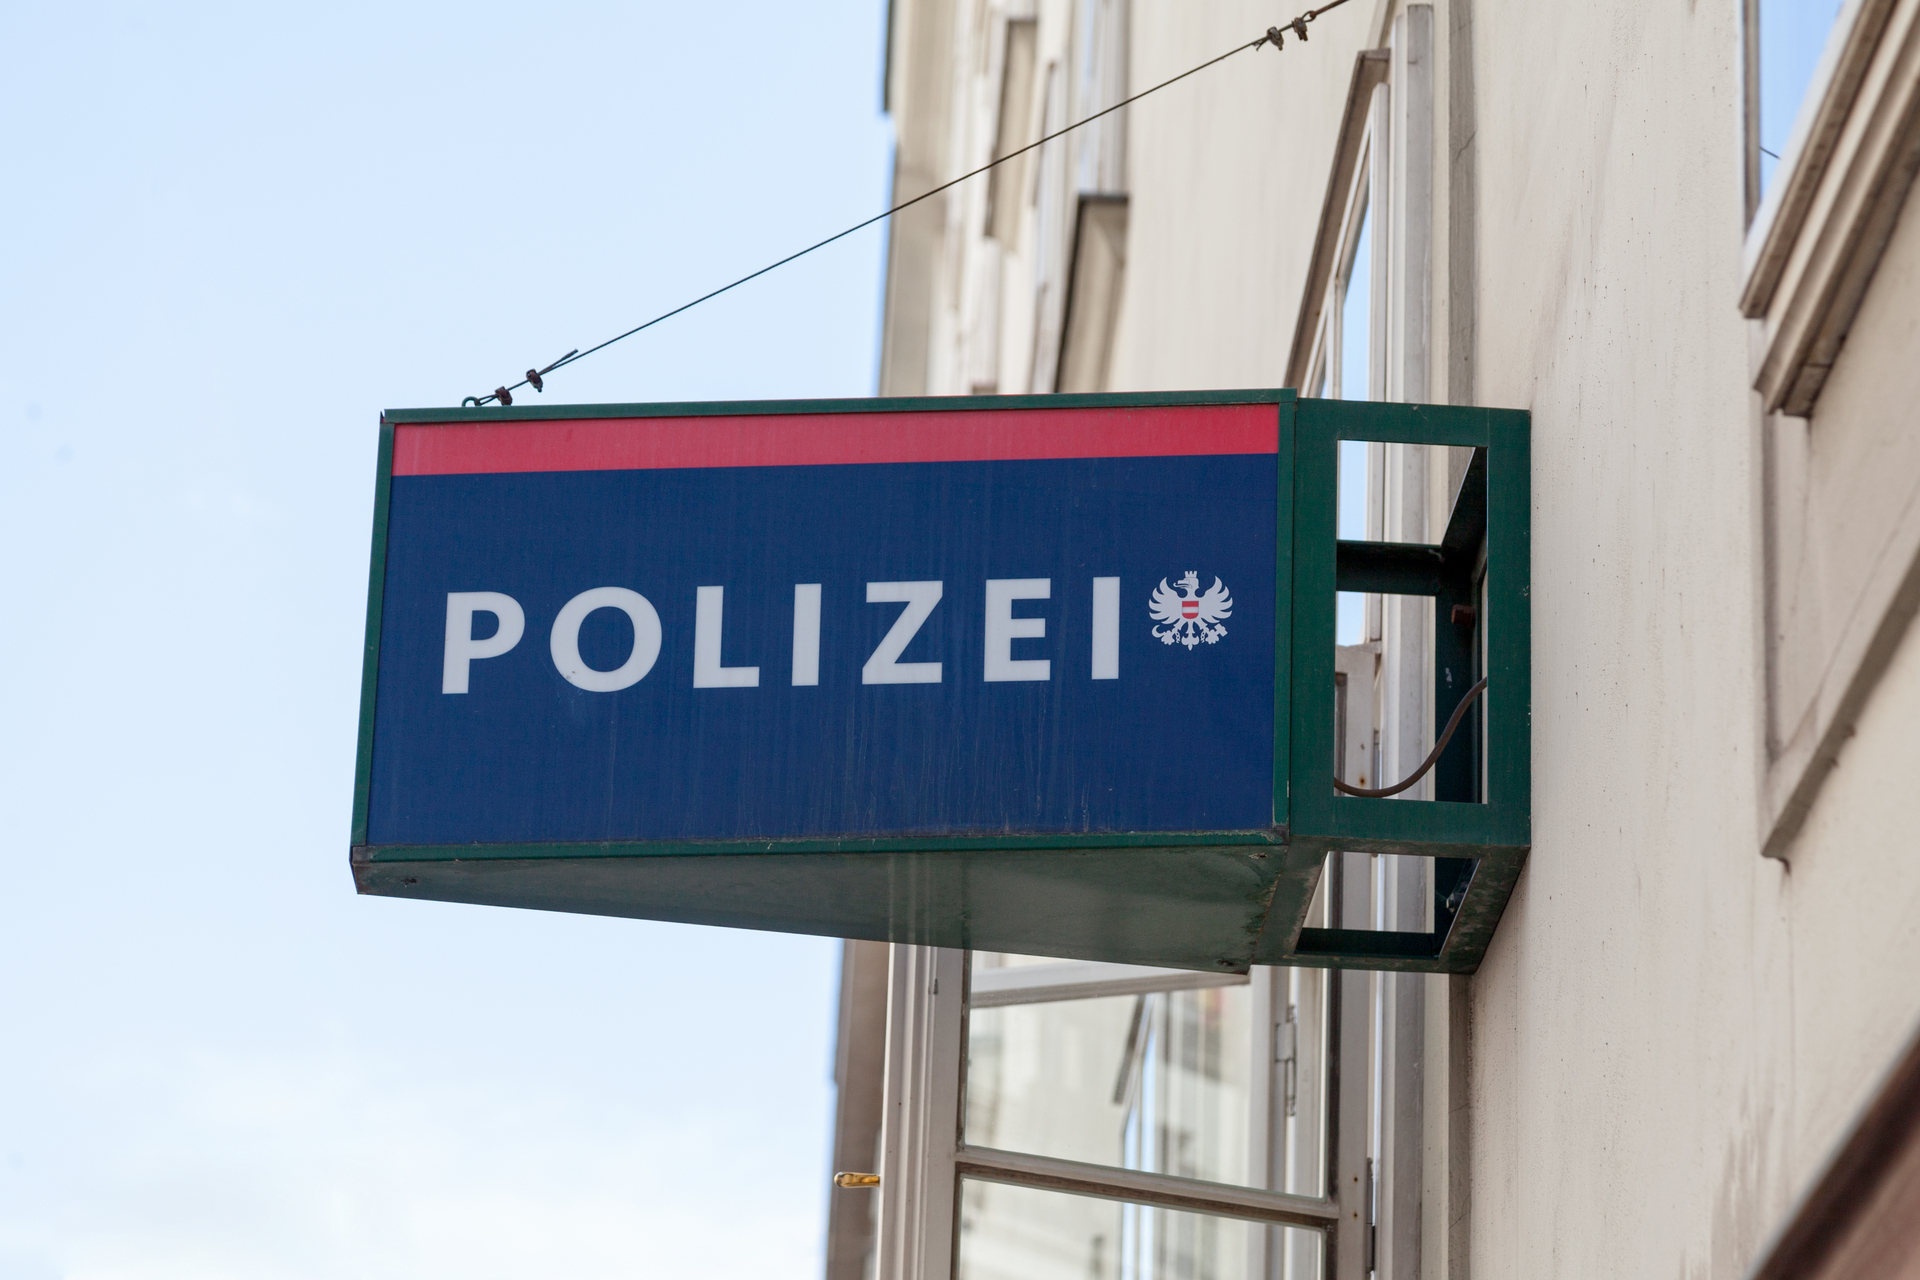 Budynek niemieckiej policji z tabliczką z napisem "polizei"